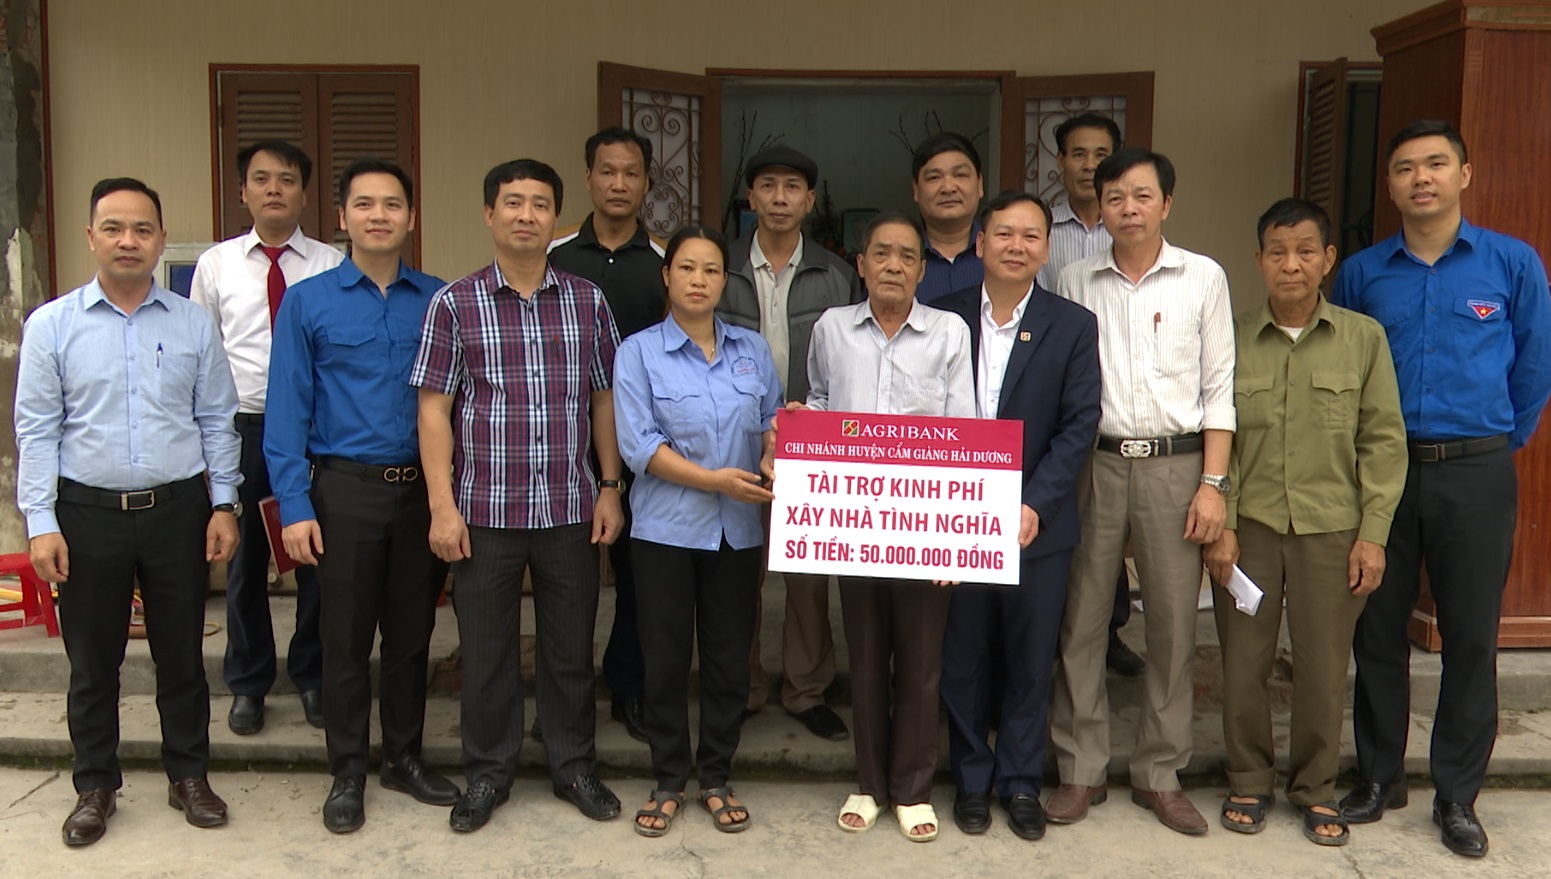 Agriank chi nhánh tỉnh Hải Dương hỗ trợ xây dựng 2 ngôi nhà tình nghĩa